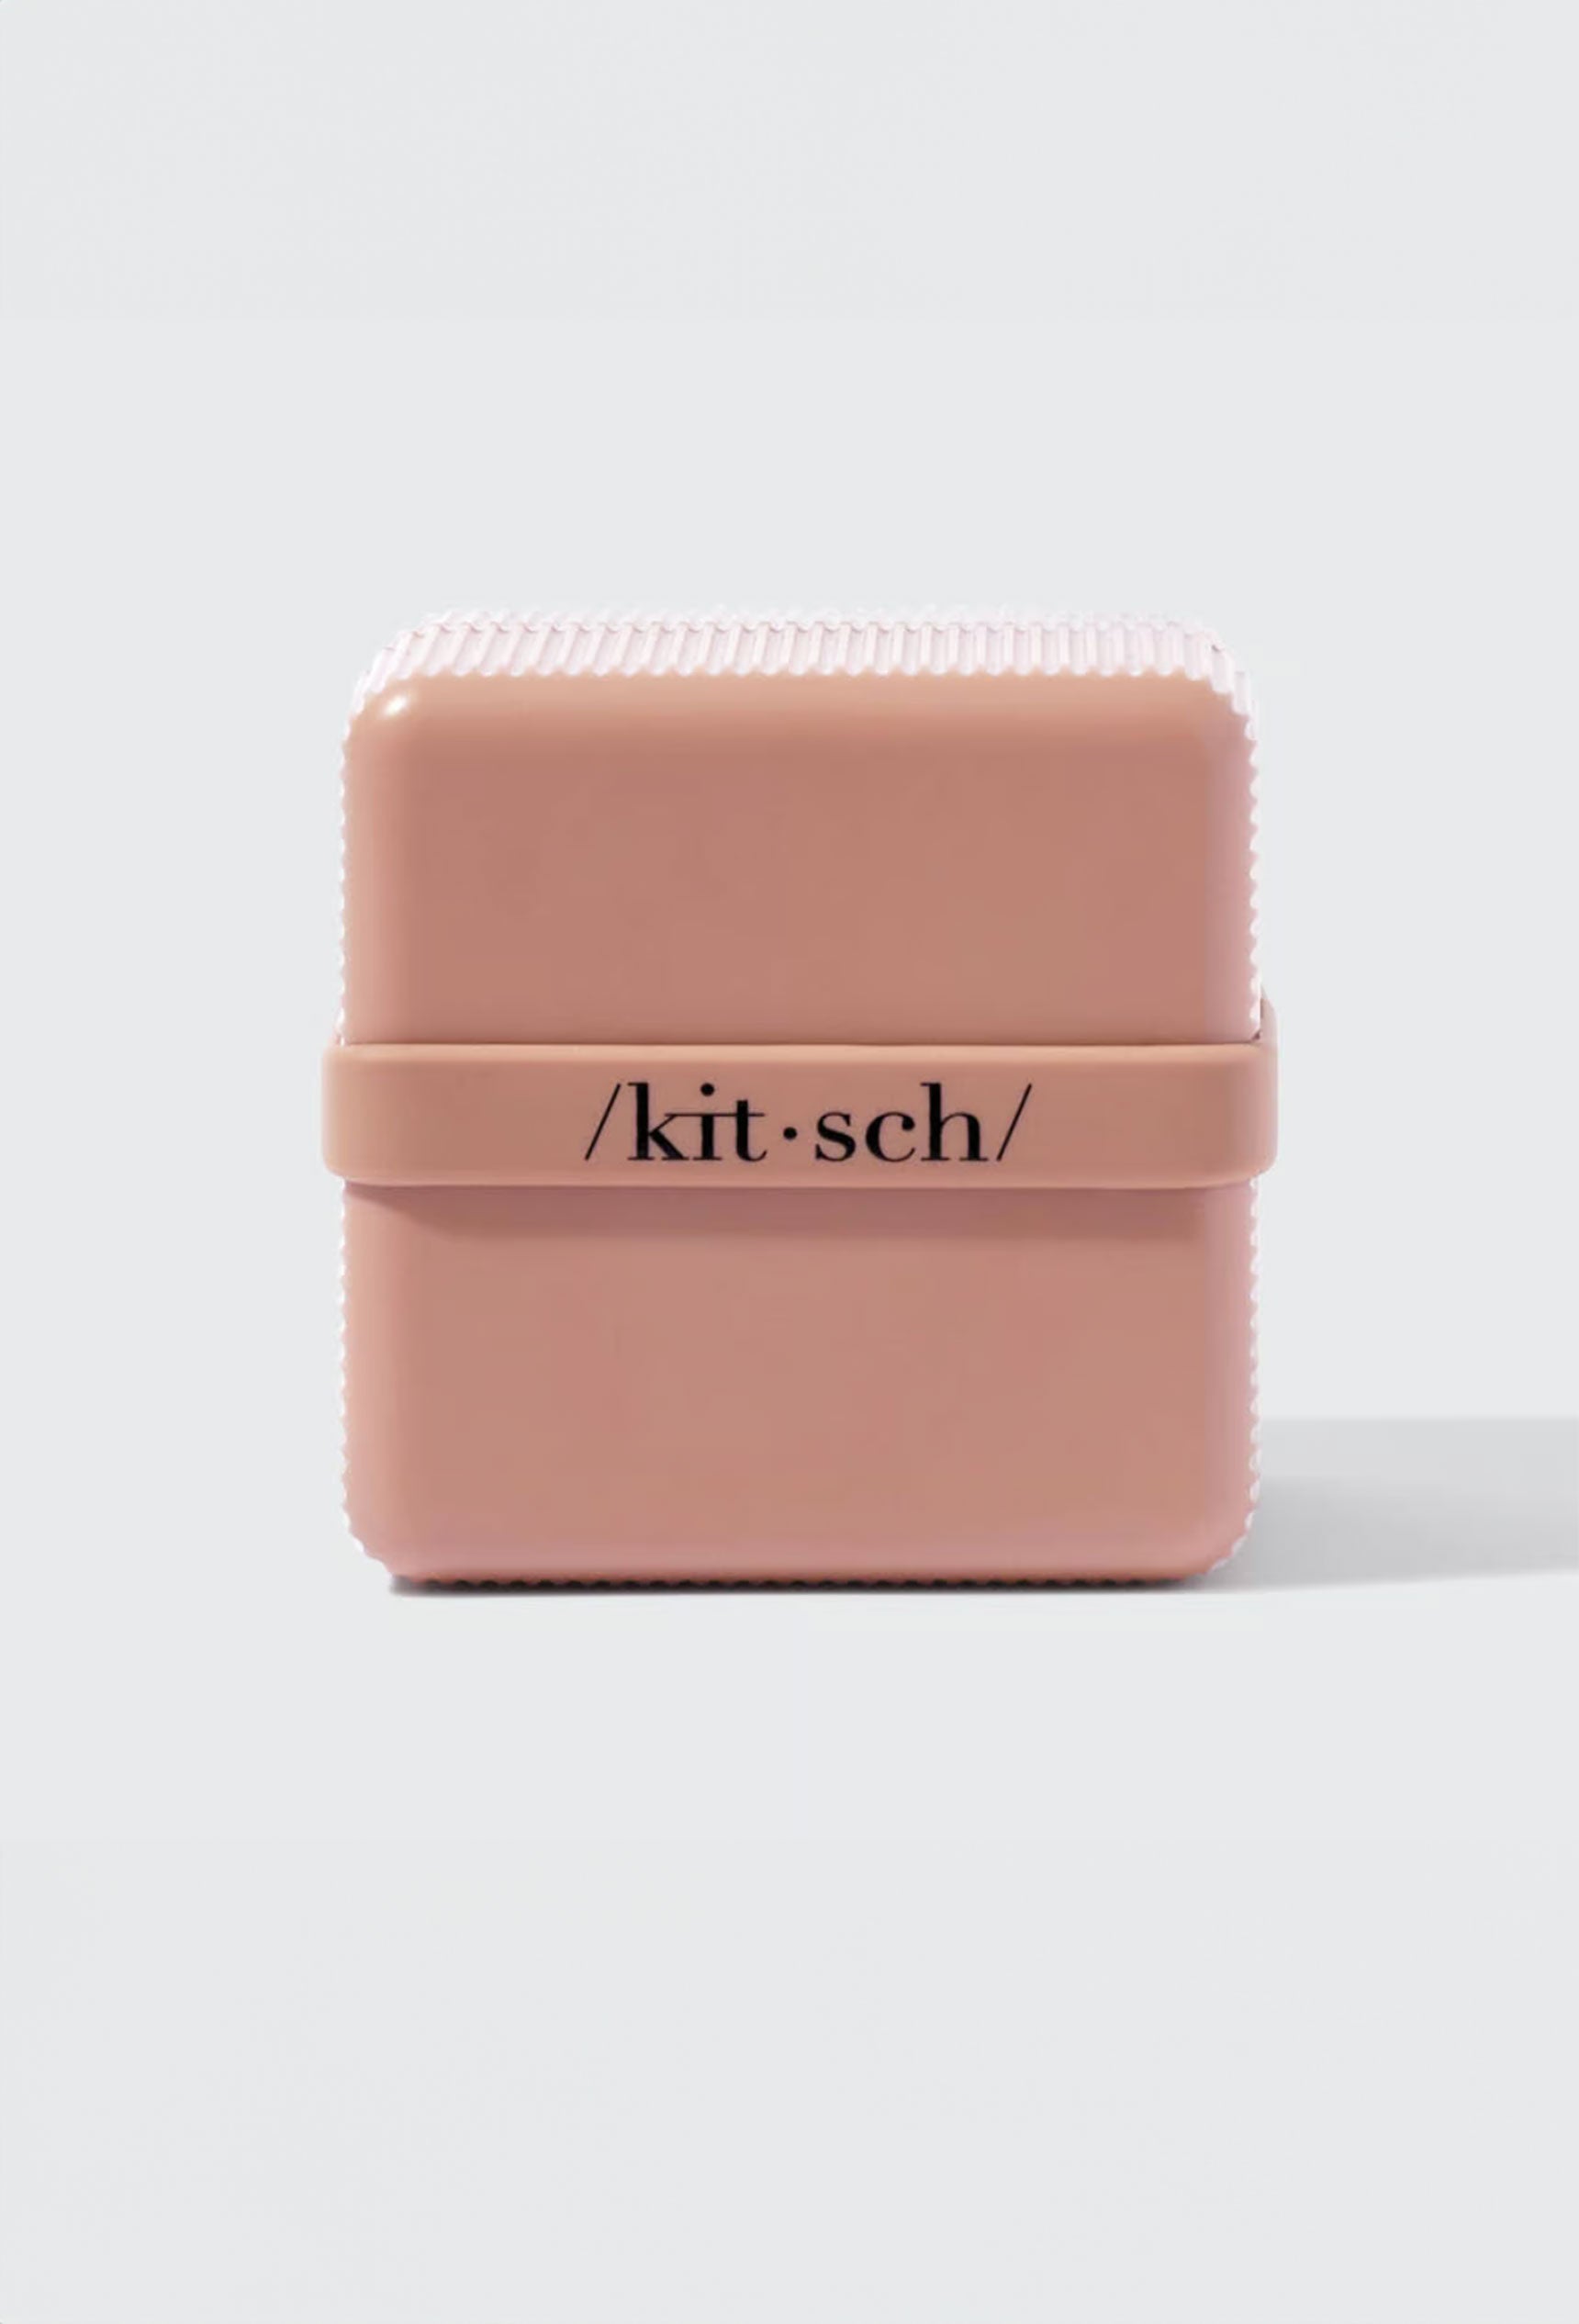 Kitsch Shampoo & Conditioner Travel Case